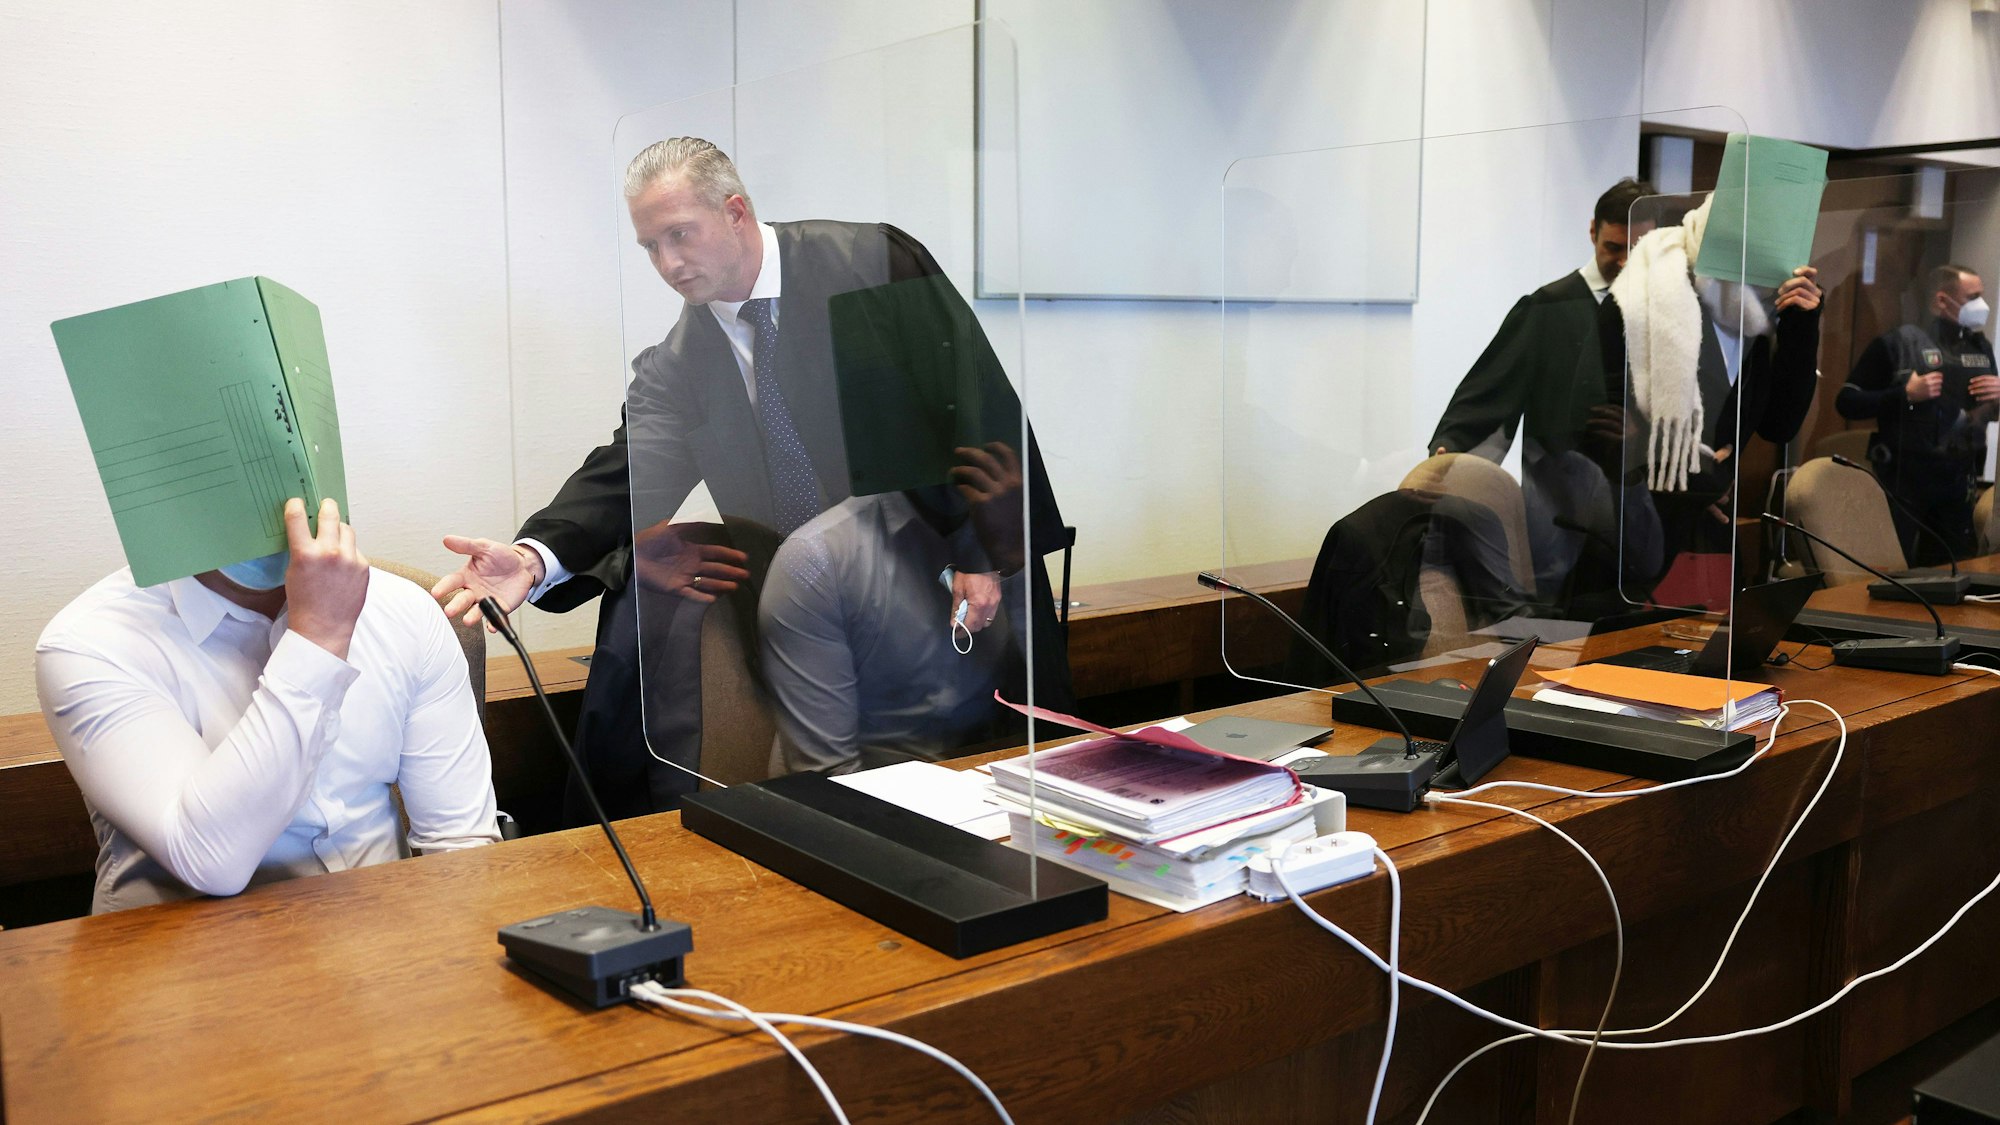 Zwei Angeklagte halten sich neben ihren Verteidigern im Gerichtssaal eine Mappe vor das Gesicht.